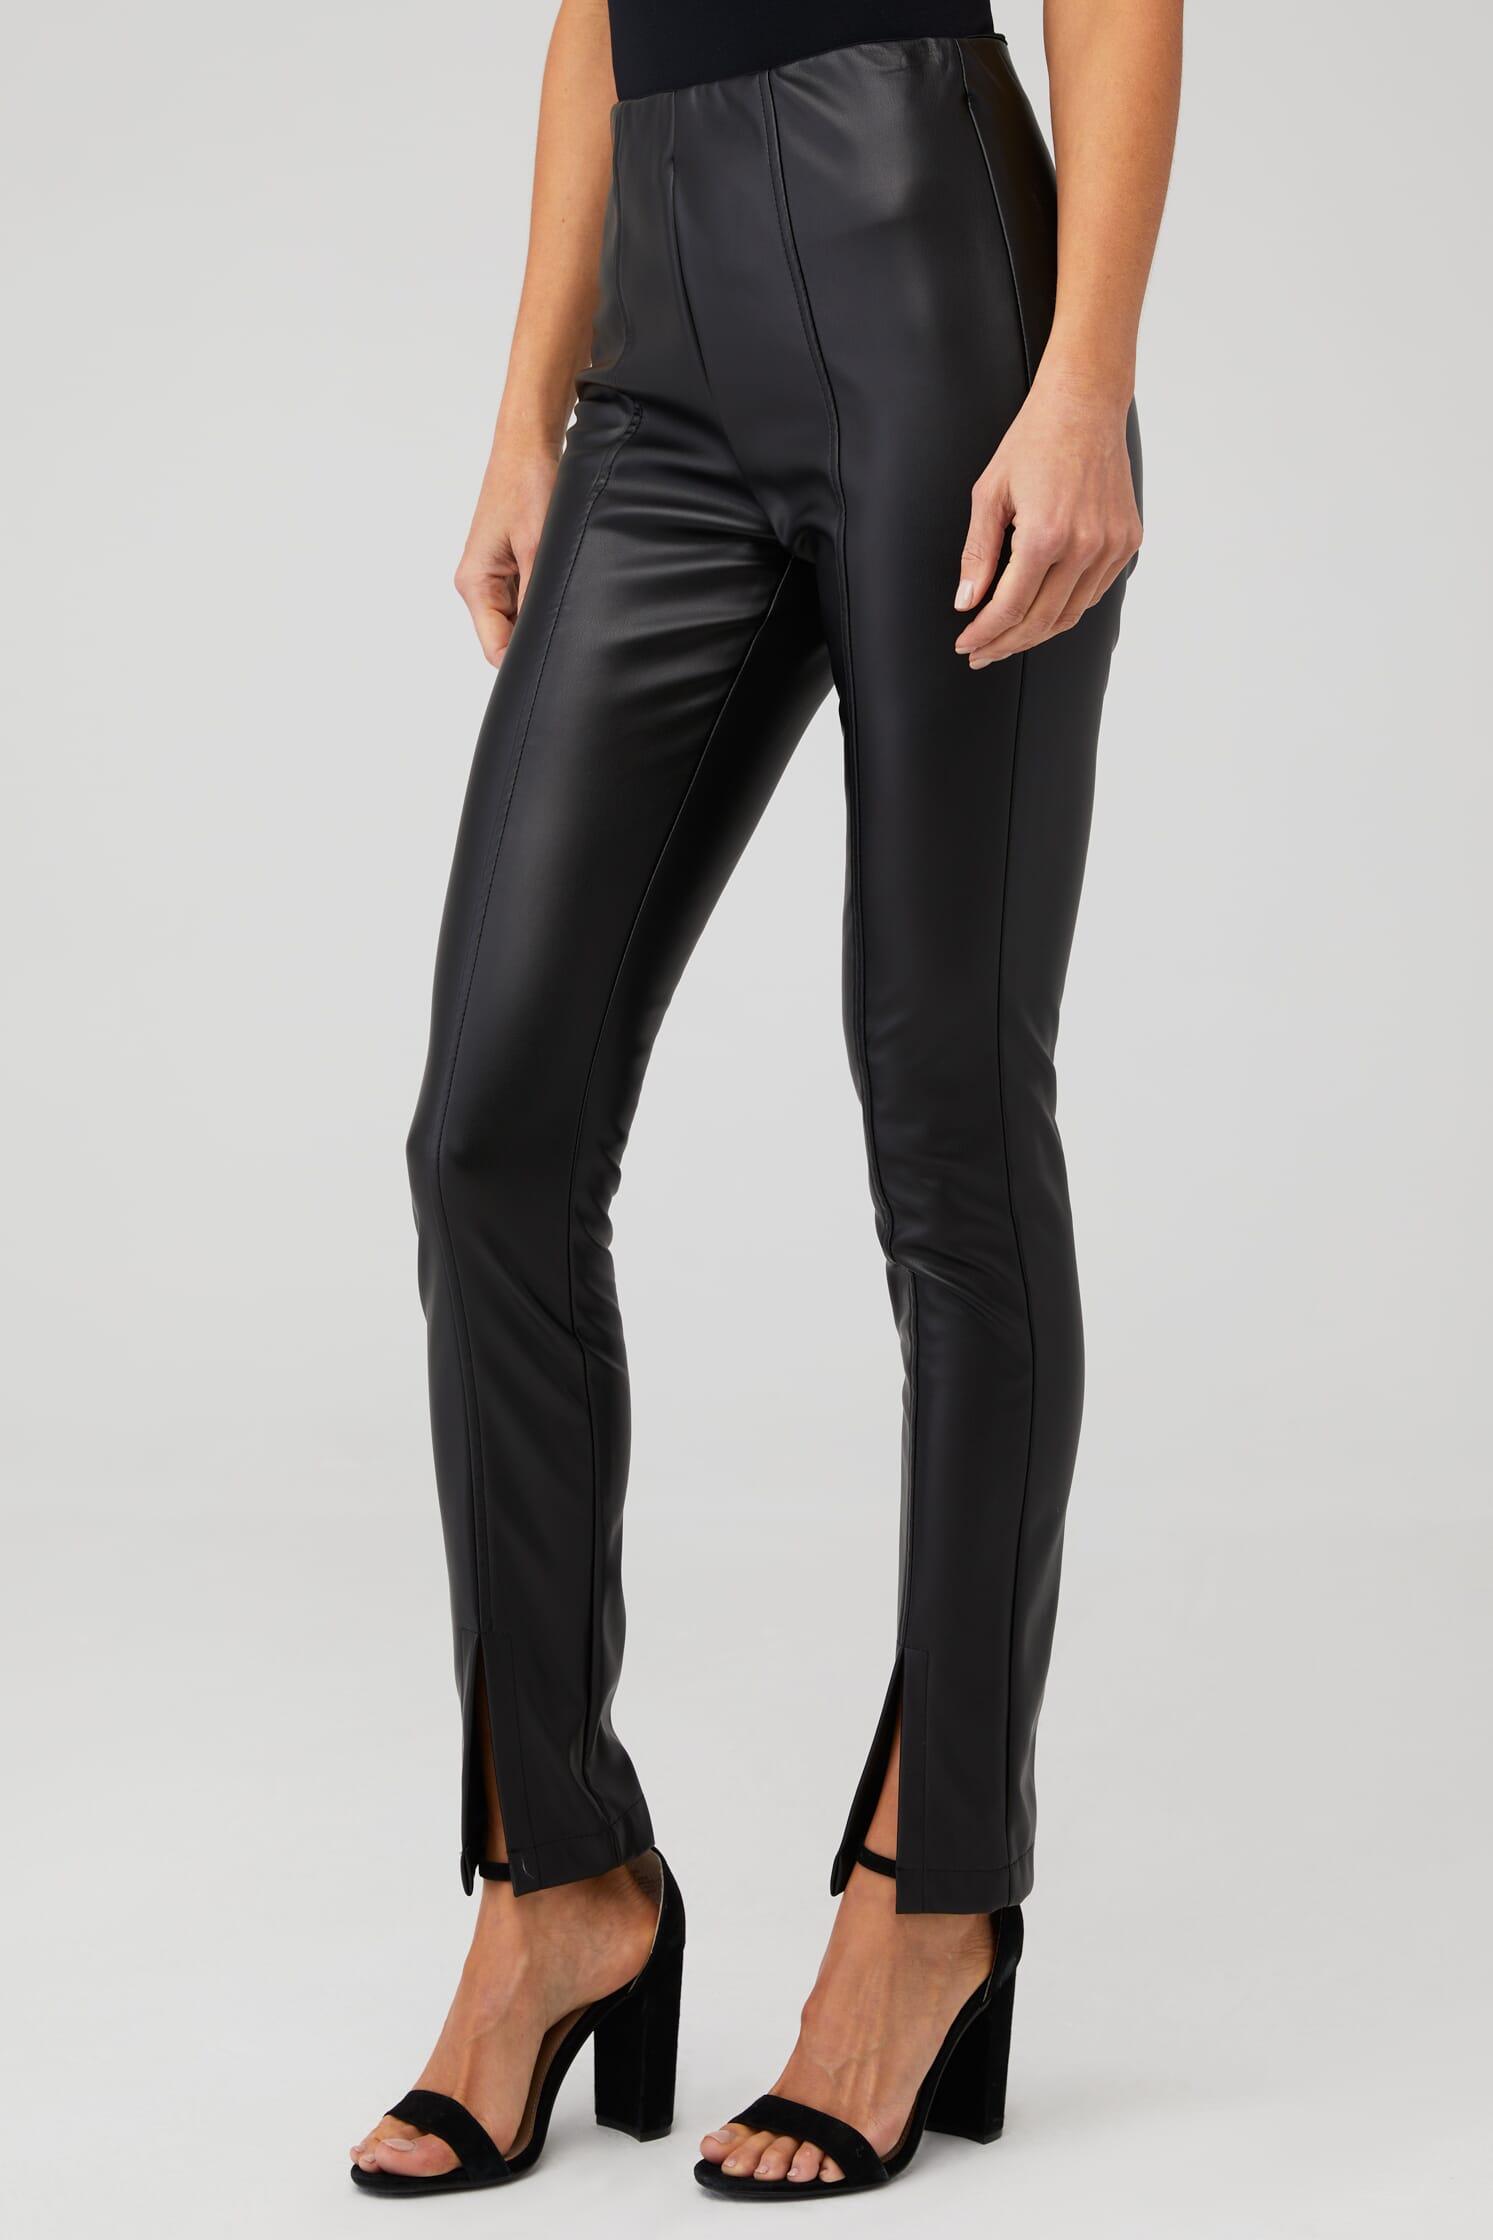 Steve Madden | Anastasia Legging in Black | FashionPass